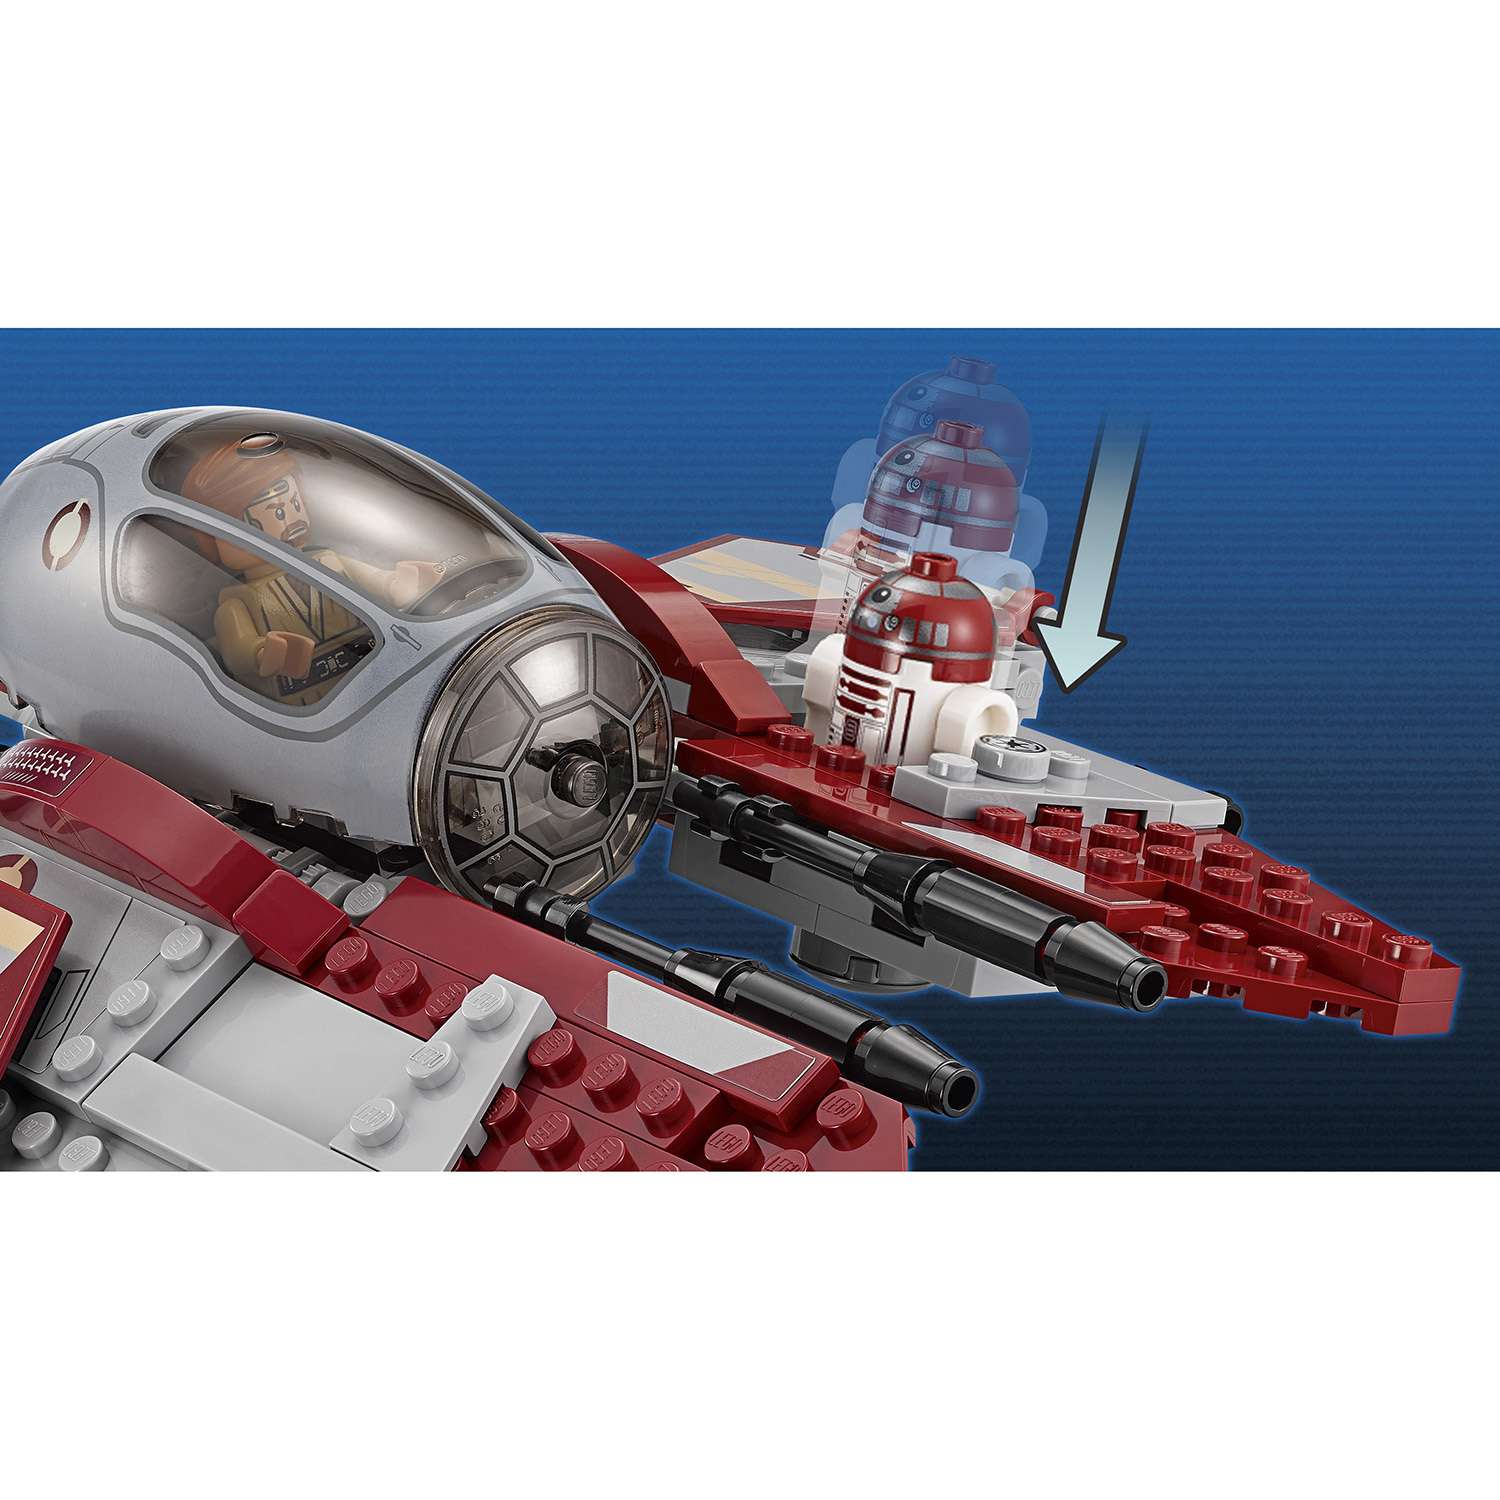 Конструктор LEGO Star Wars TM Перехватчик джедаев Оби-Вана Кеноби™ (75135) - фото 8